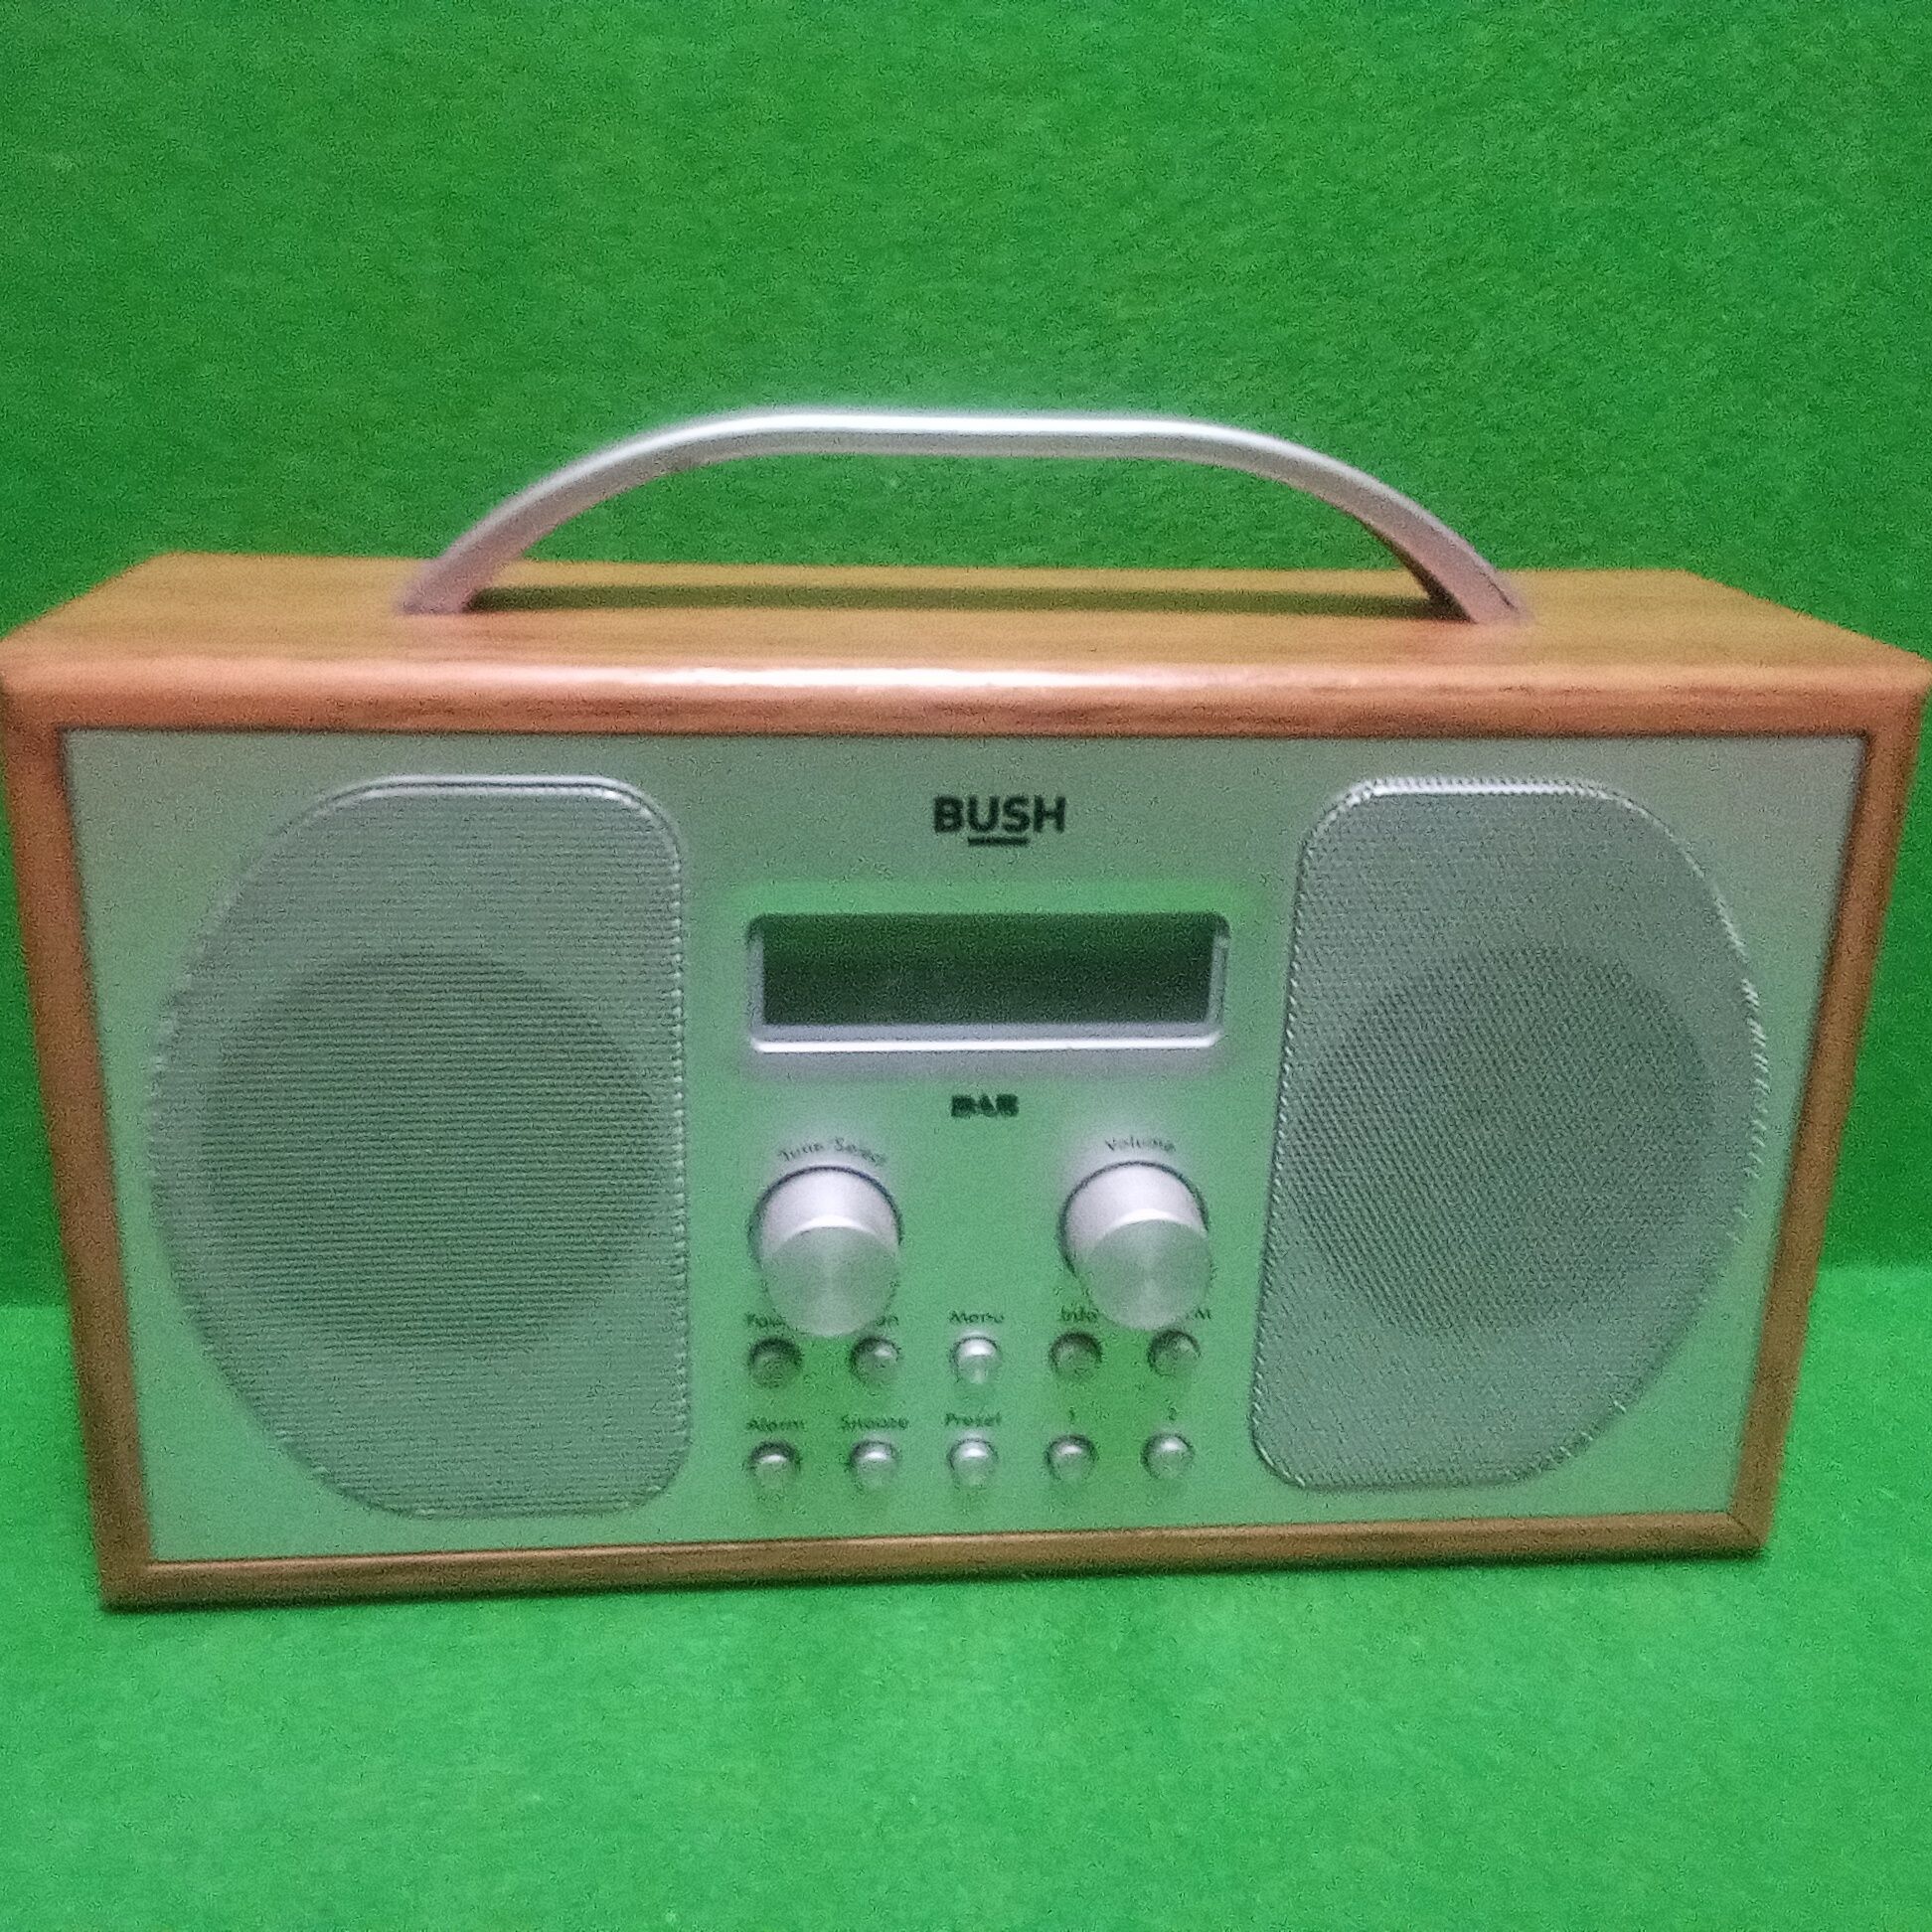 Хороший винтажный радиоприёмник в деревянном корпусе. Европа.

1 200 г